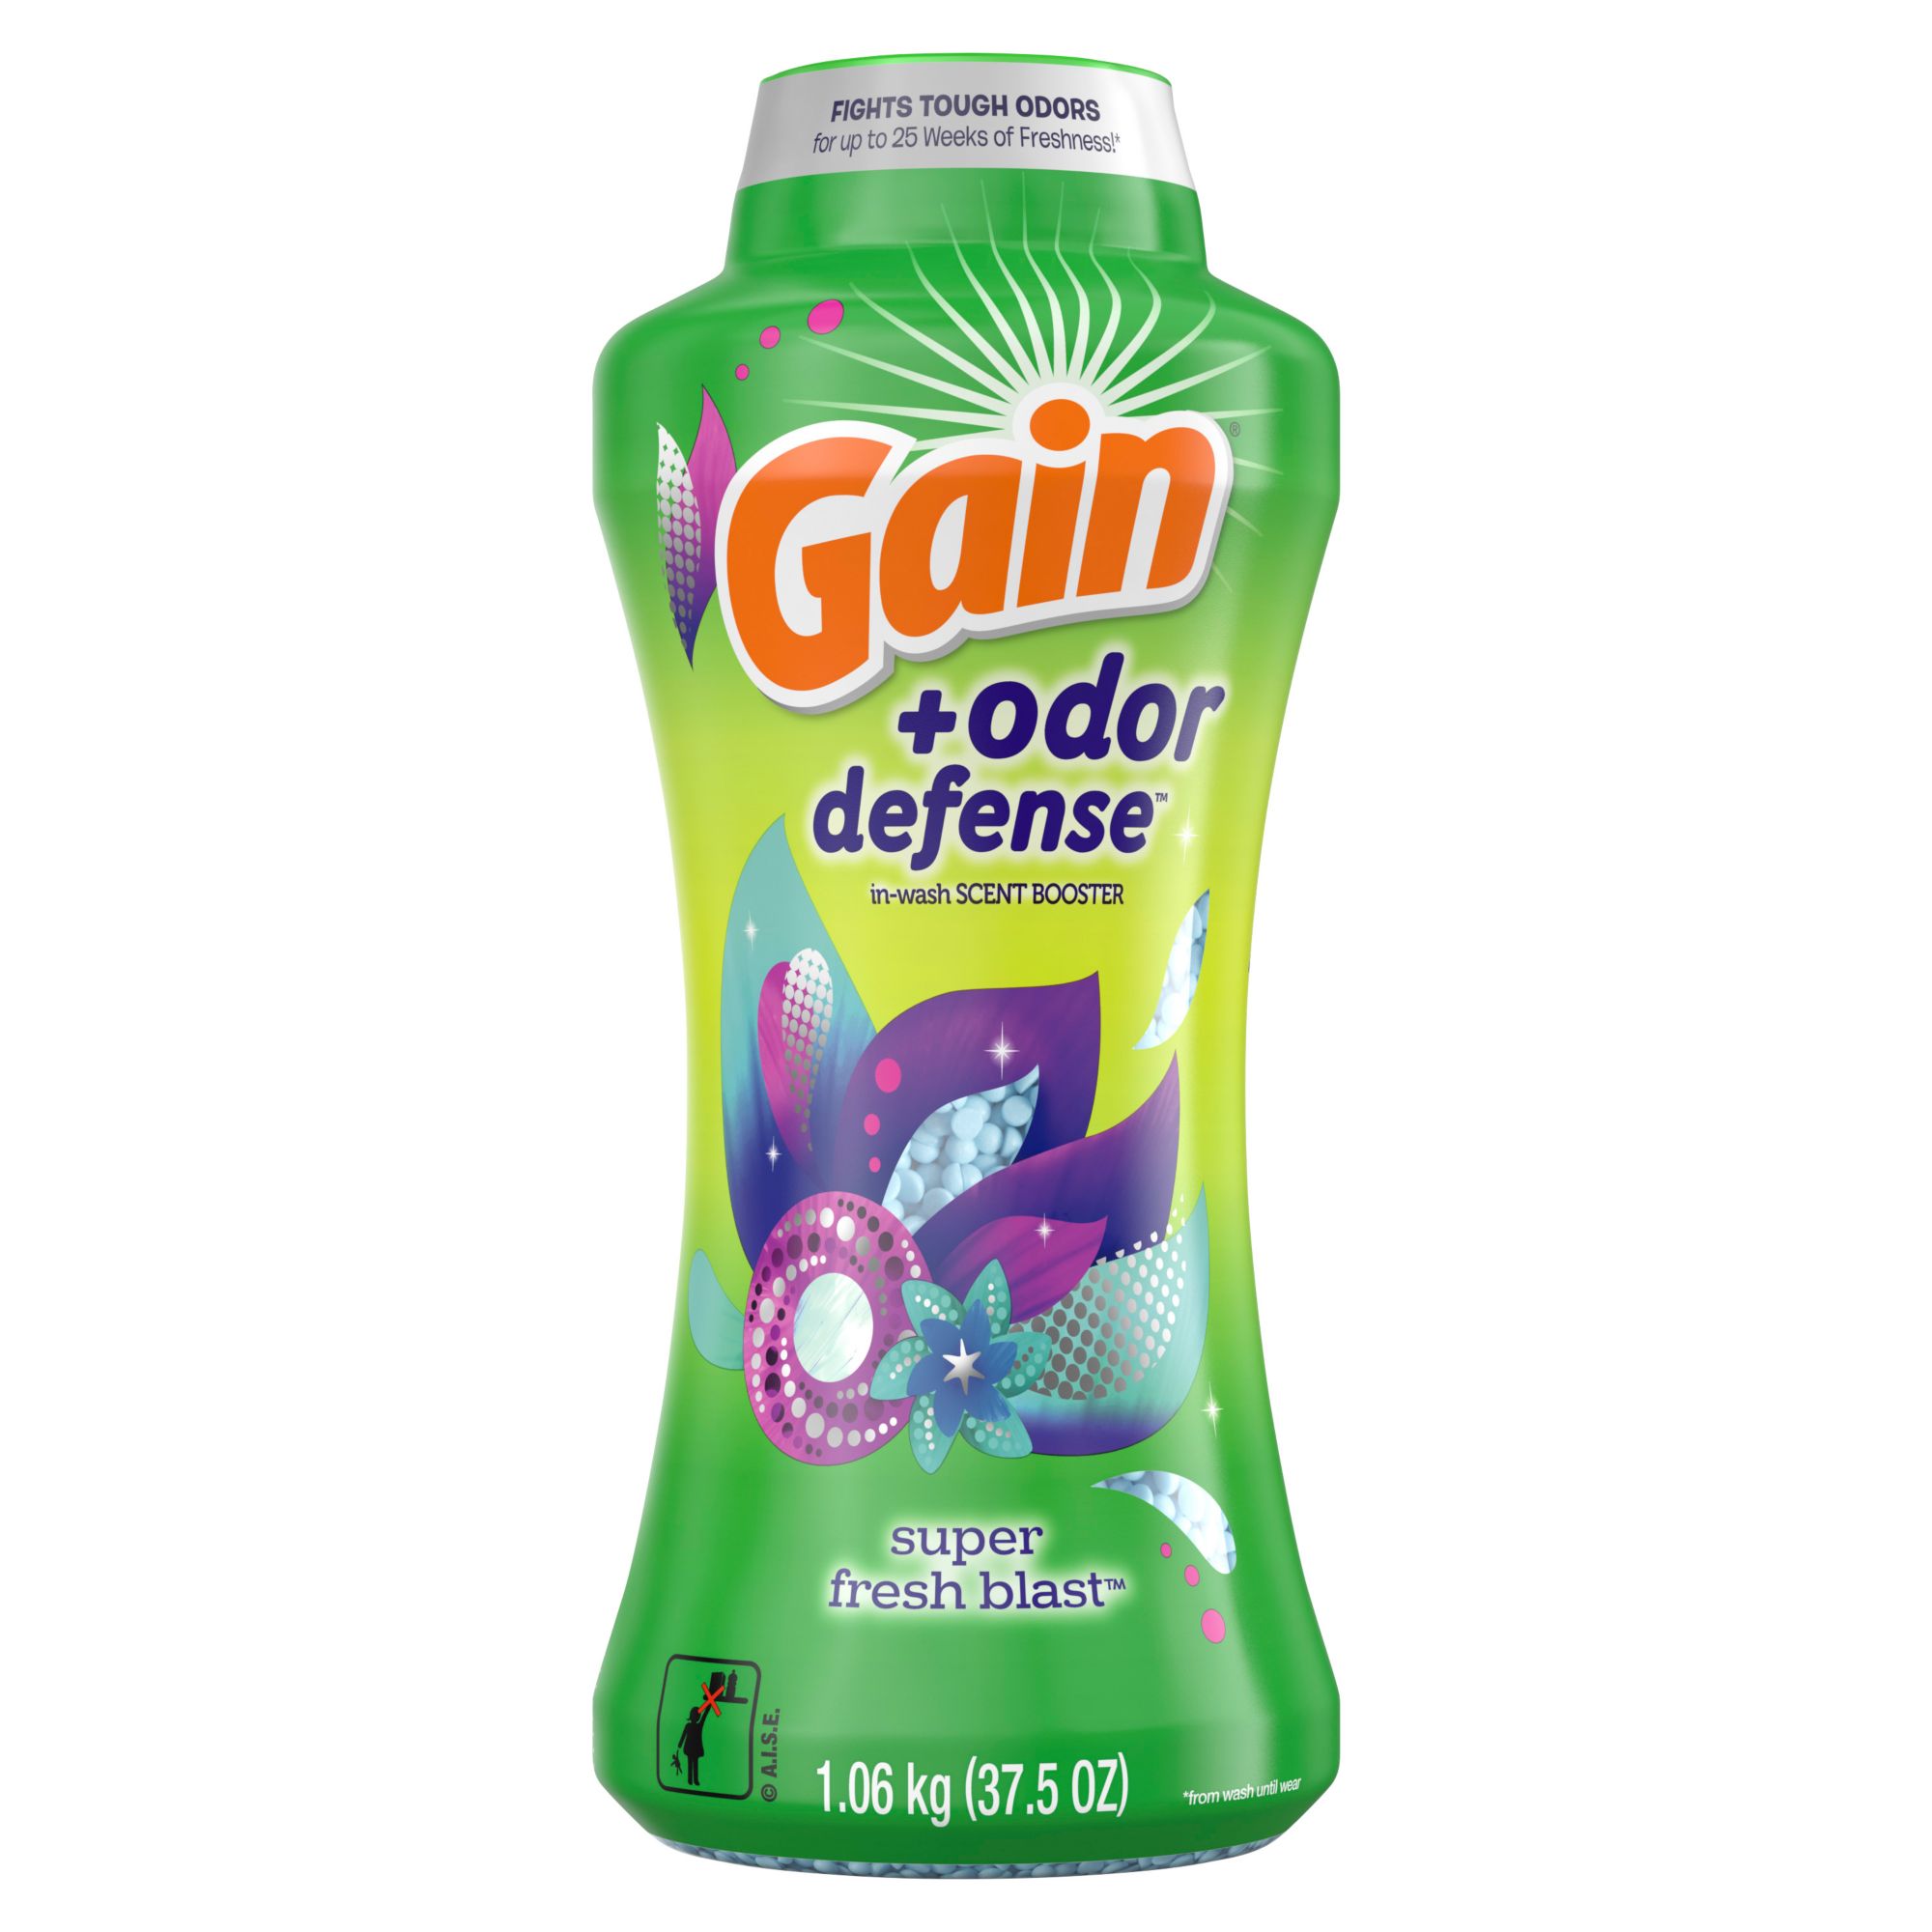 Gain + Odor Defense In-Wash Scent Booster, 37.5 oz. - Super Fresh Blast Scent